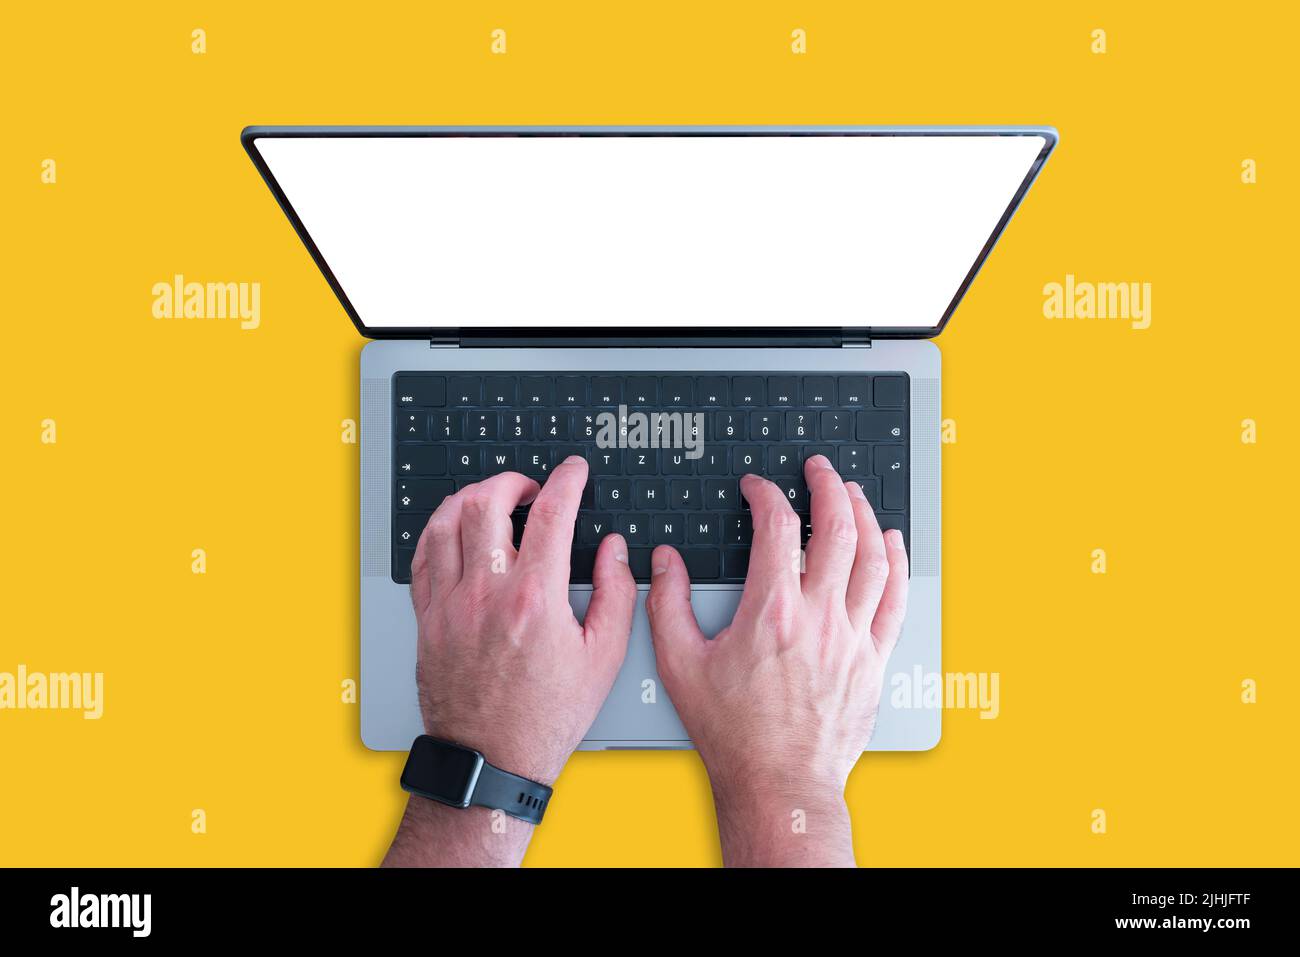 vista superior de una persona que utiliza un ordenador portátil moderno con espacio de copia en la pantalla sobre fondo naranja Foto de stock